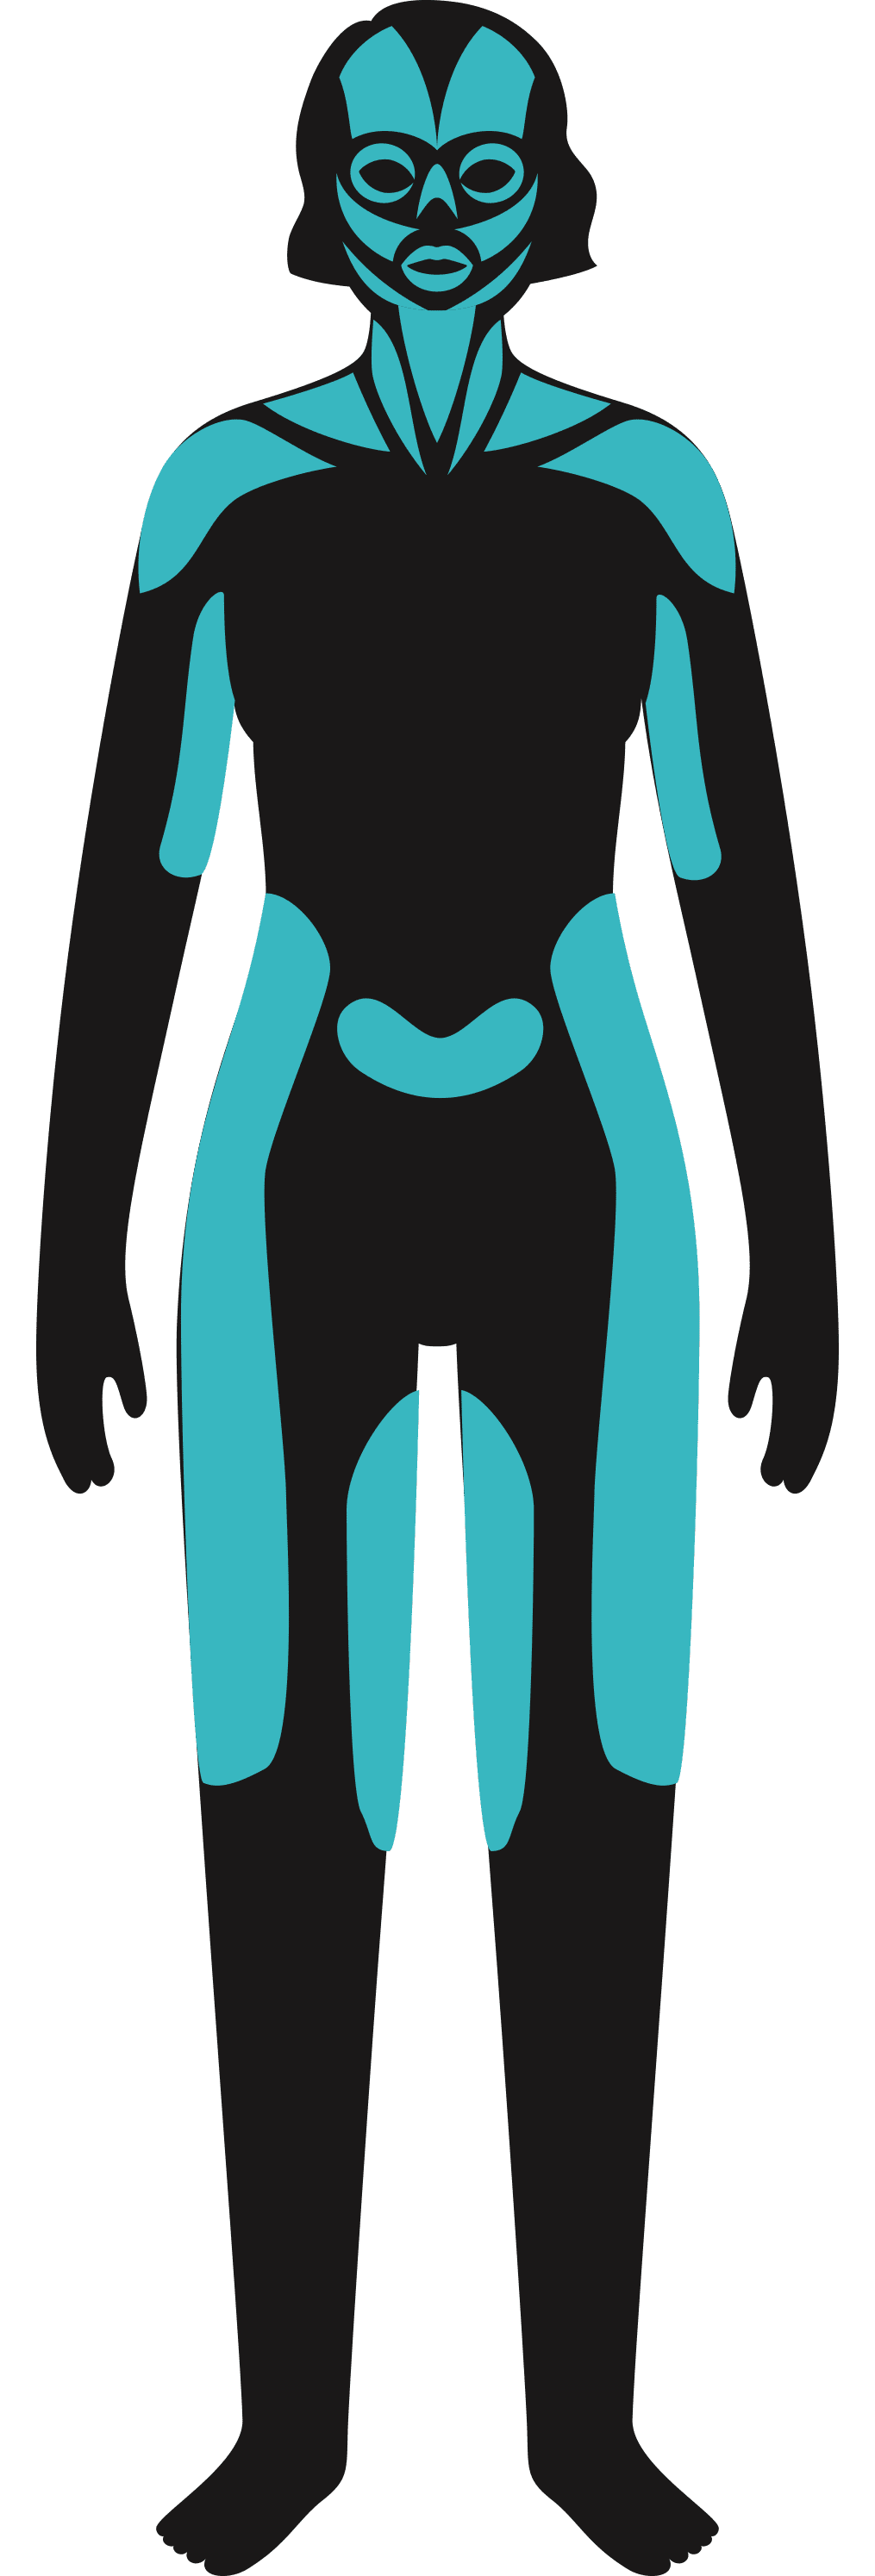 Soins technologiques - Dessin corps humain - MCT Douleur chronique